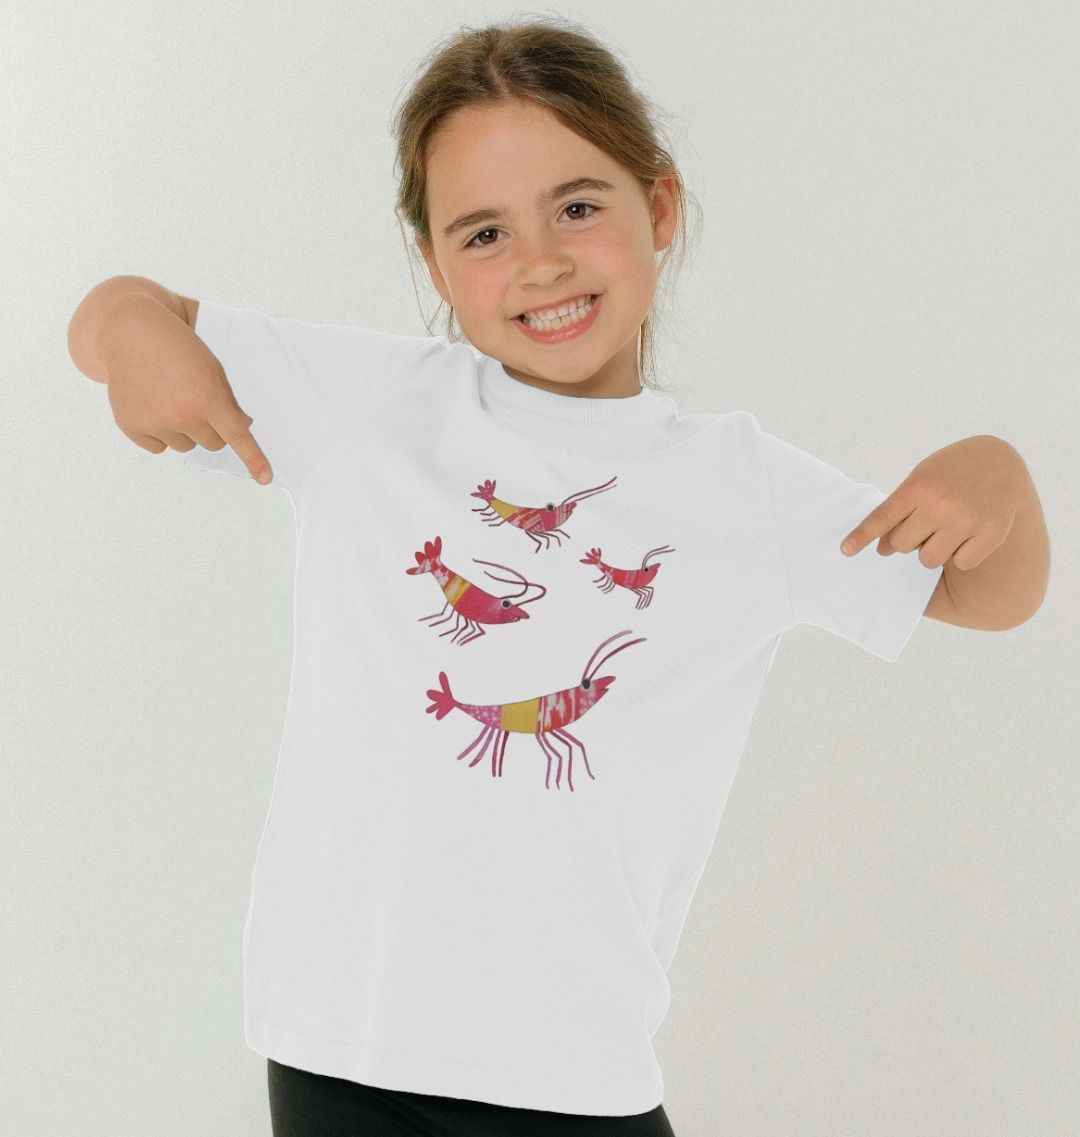 prawn party organic kids tee - Printed Kids T-Shirt - Sarah Millin